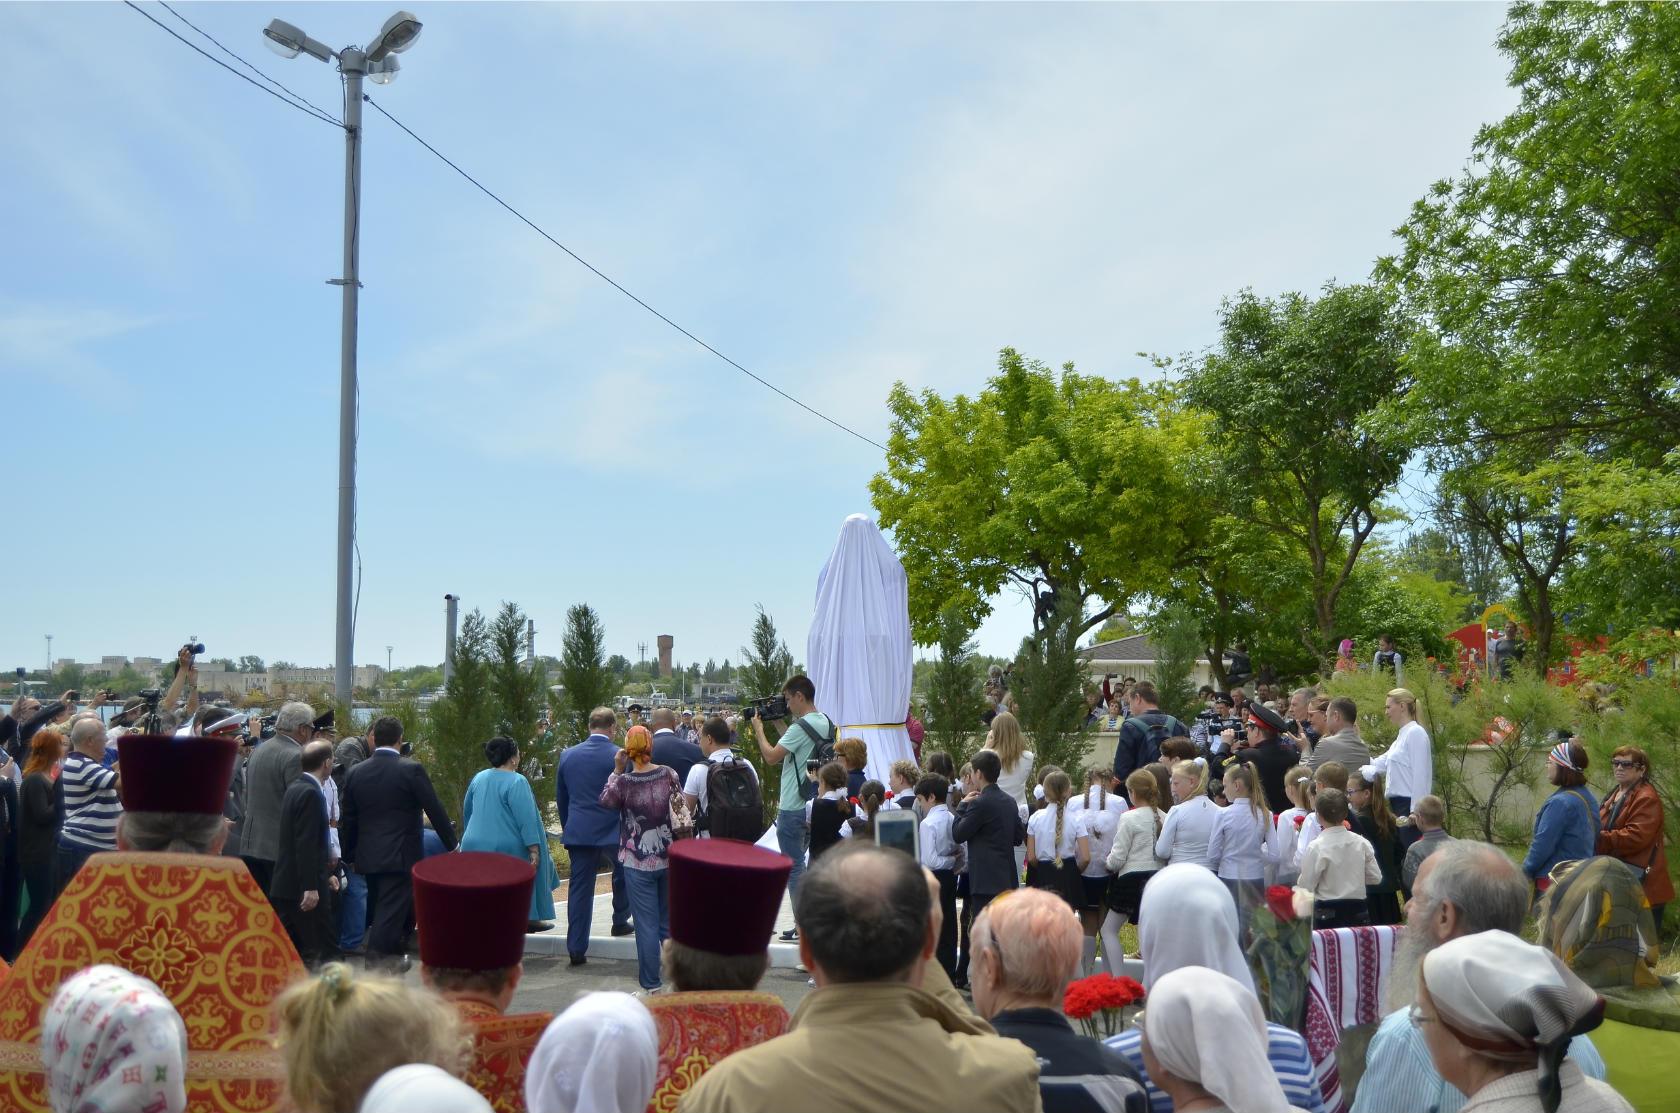 Открытие памятника Николаю II в Евпатории